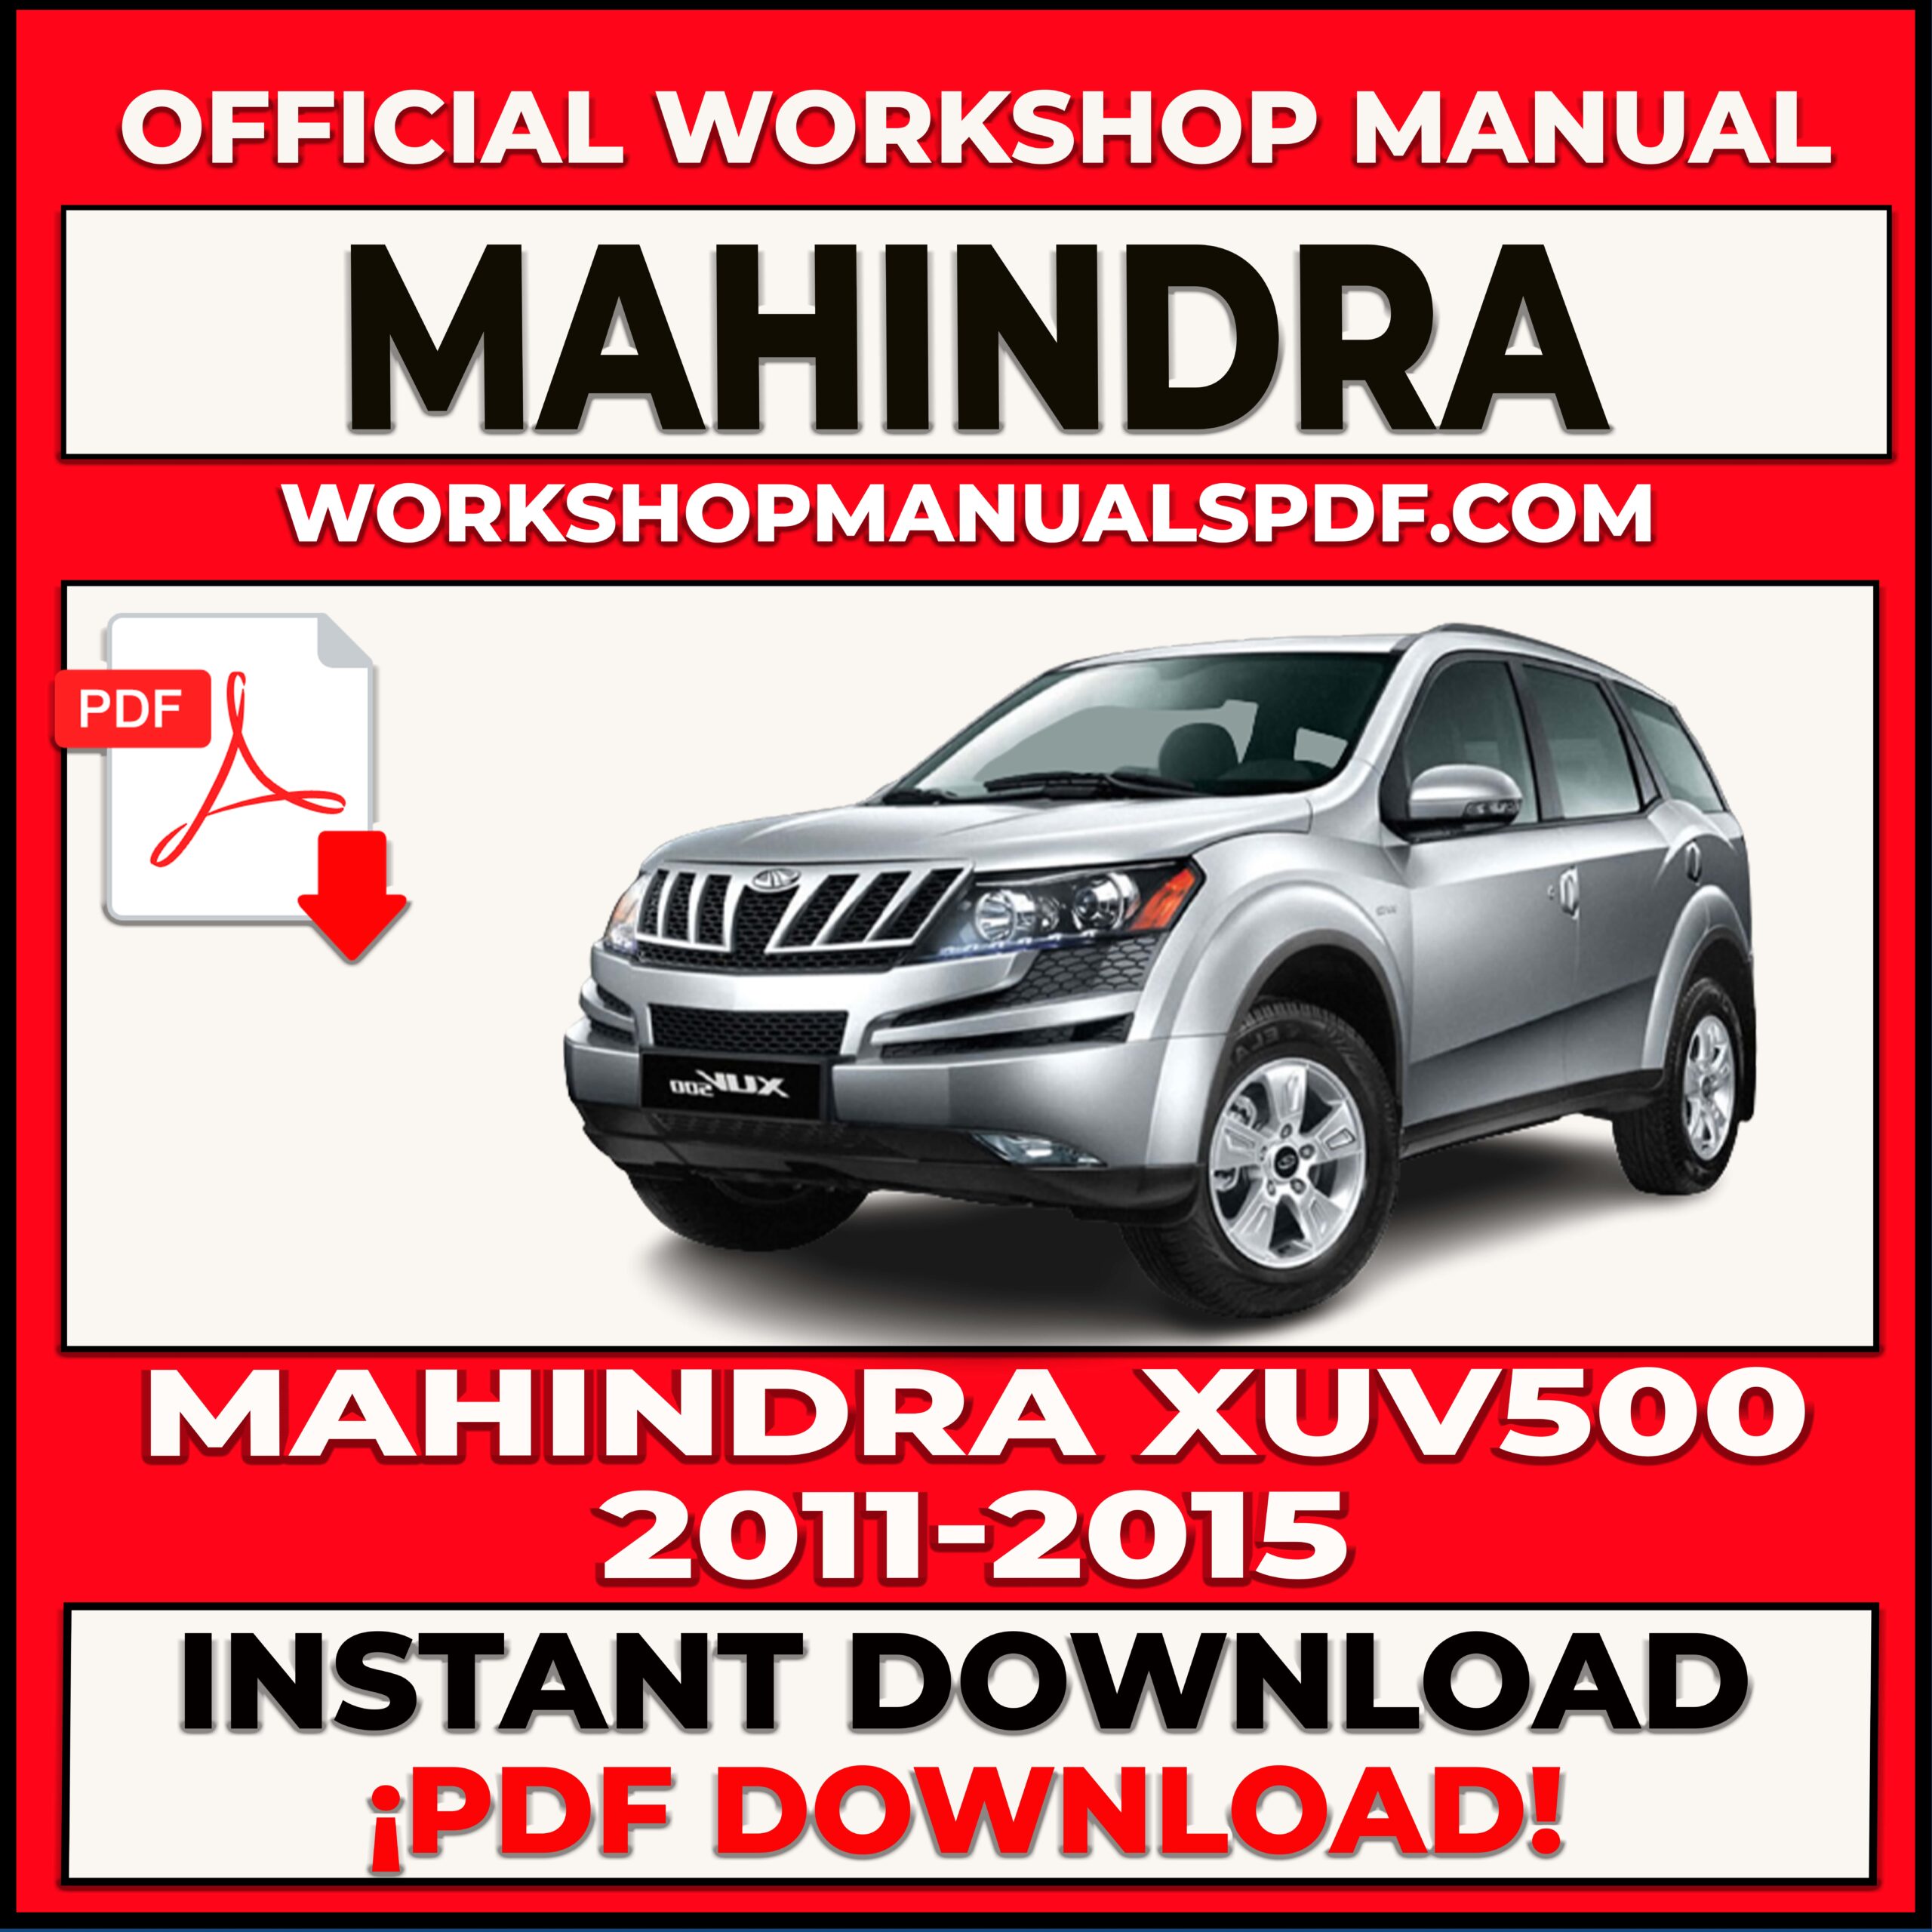 Mahindra XUV500 (2011-2015) Workshop Repair Manual